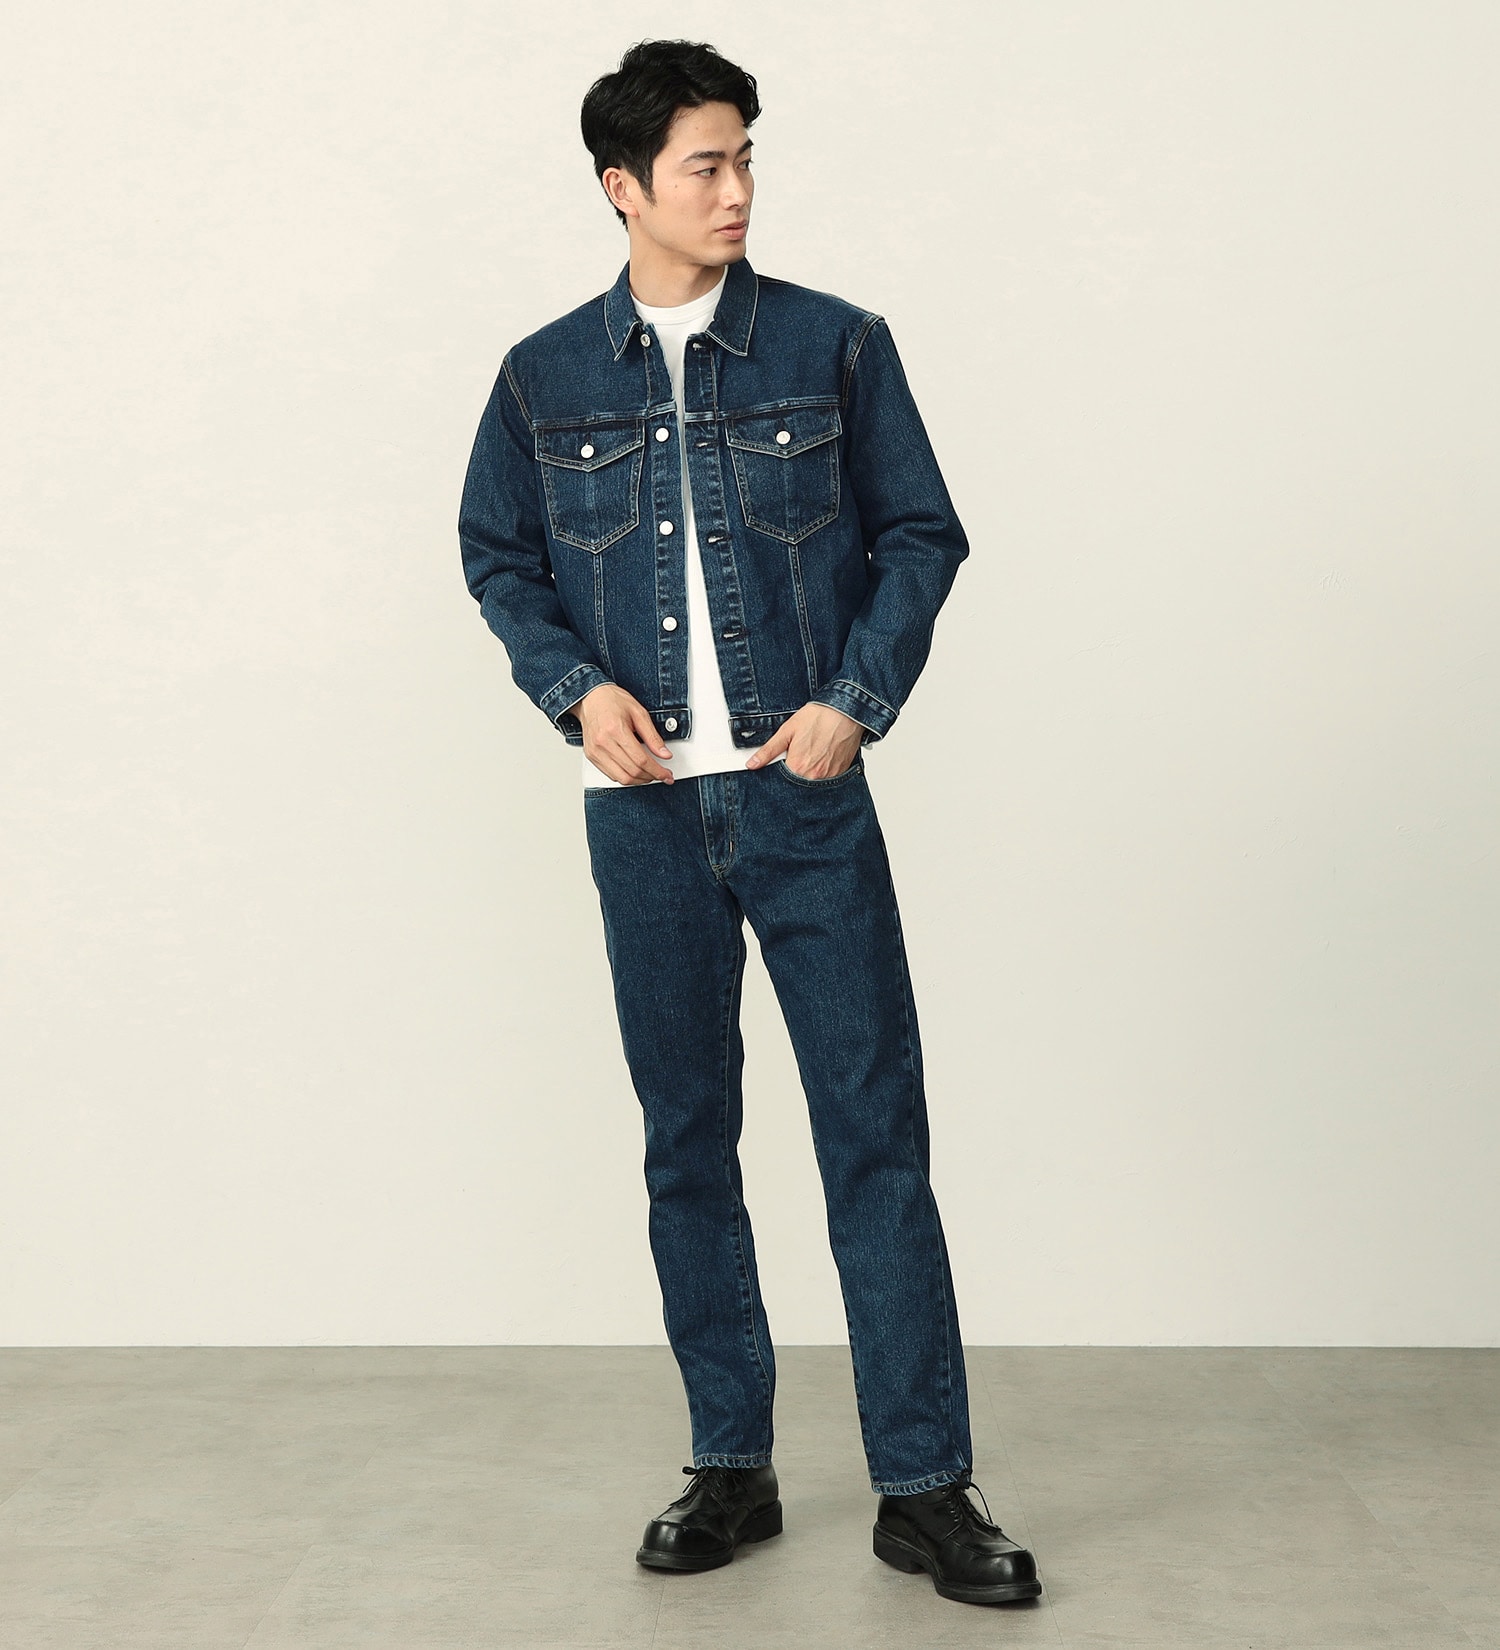 EDWIN(エドウイン)の【WEB限定】五・八デニム レギュラーストレートデニムパンツ ふつうのジーンズ 日本製 MADE IN JAPAN|パンツ/デニムパンツ/メンズ|中色ブルー